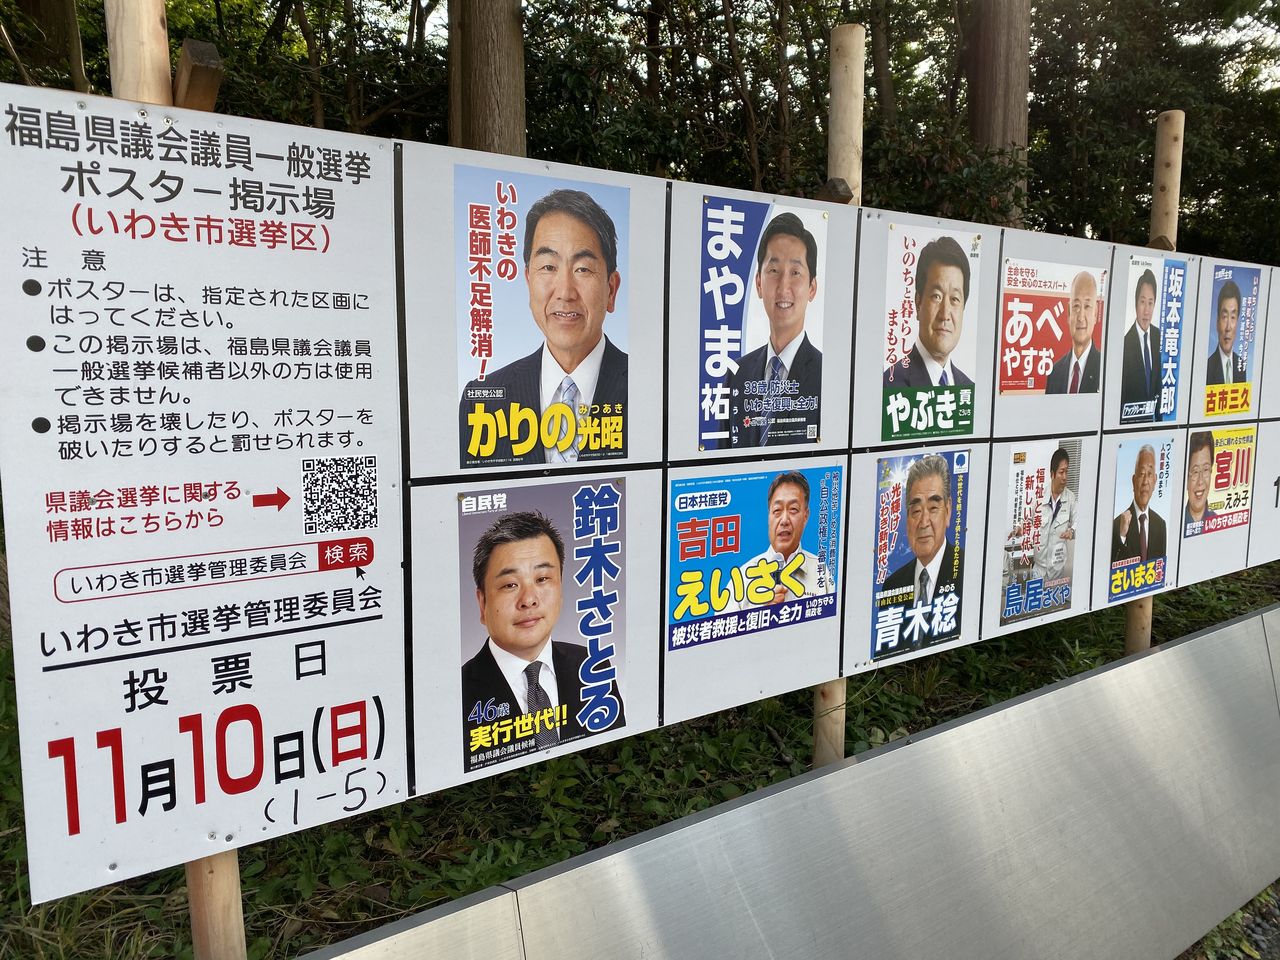 福島県議会議員選挙 告示 吉田みきと ヨシダミキト 選挙ドットコム